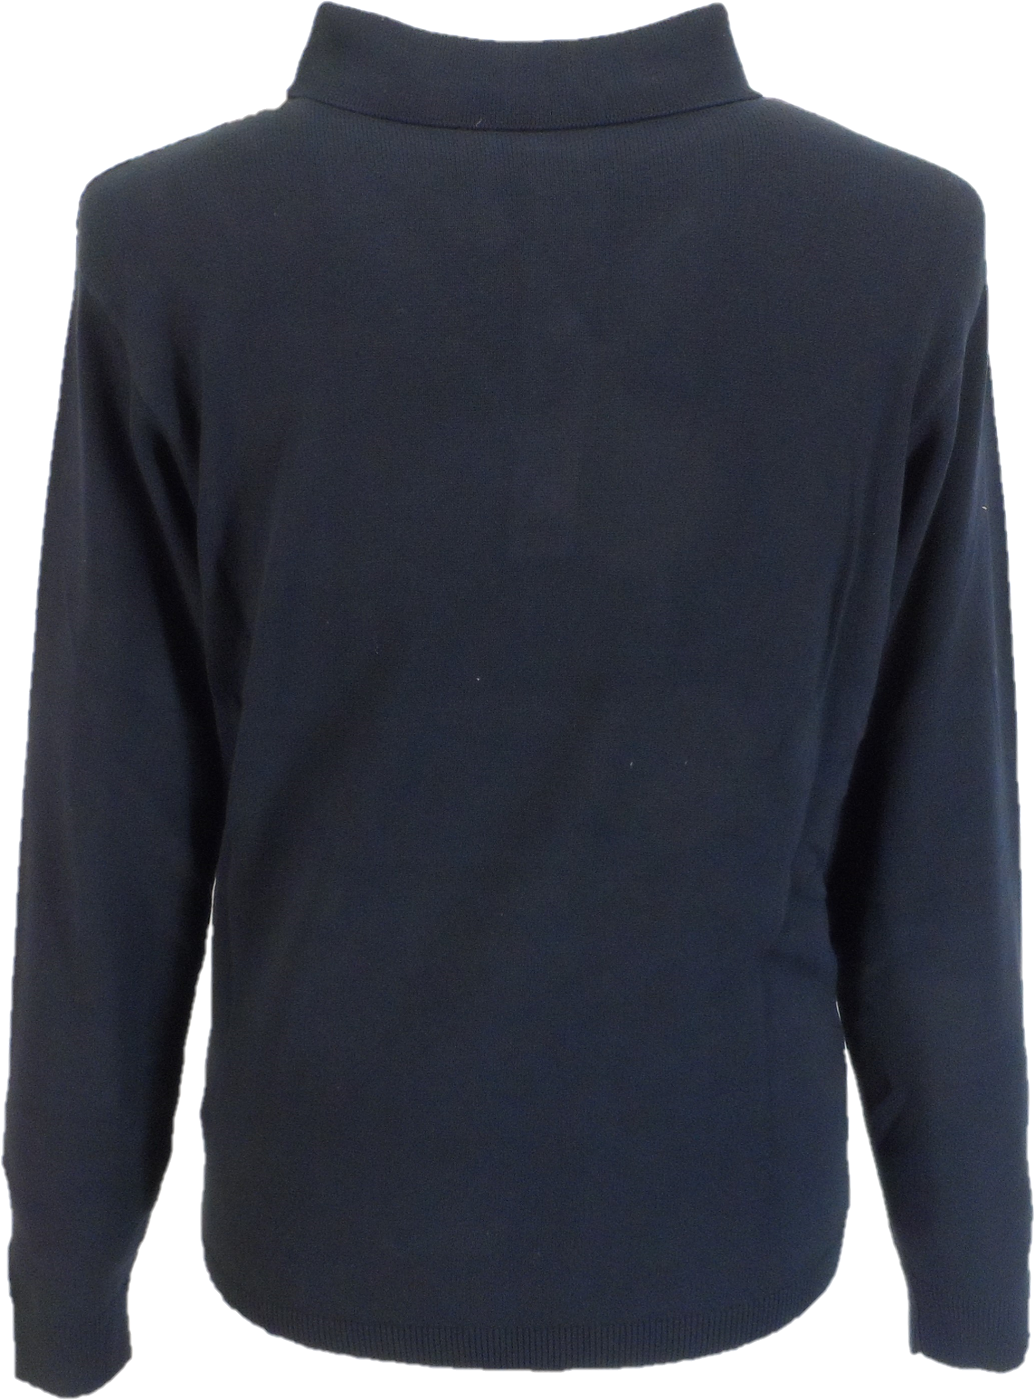 Polo Gabicci Vintage in maglia multirighe blu navy searle